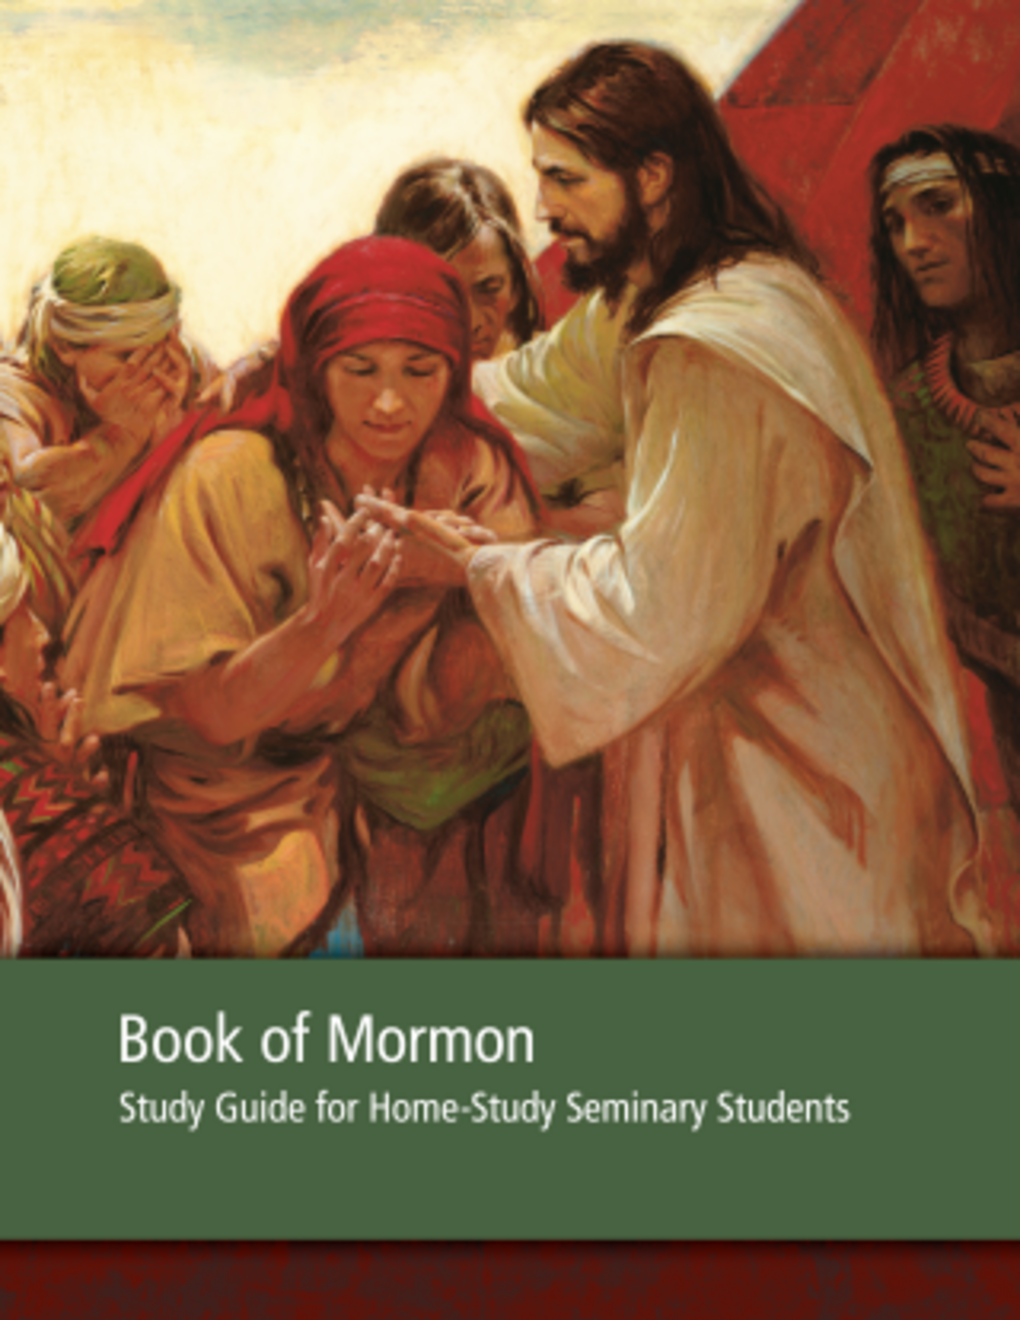 Mormon könyve tanulmányi kalauz otthontanuló ifjúsági hitoktatásban részt vevők számára – 2013